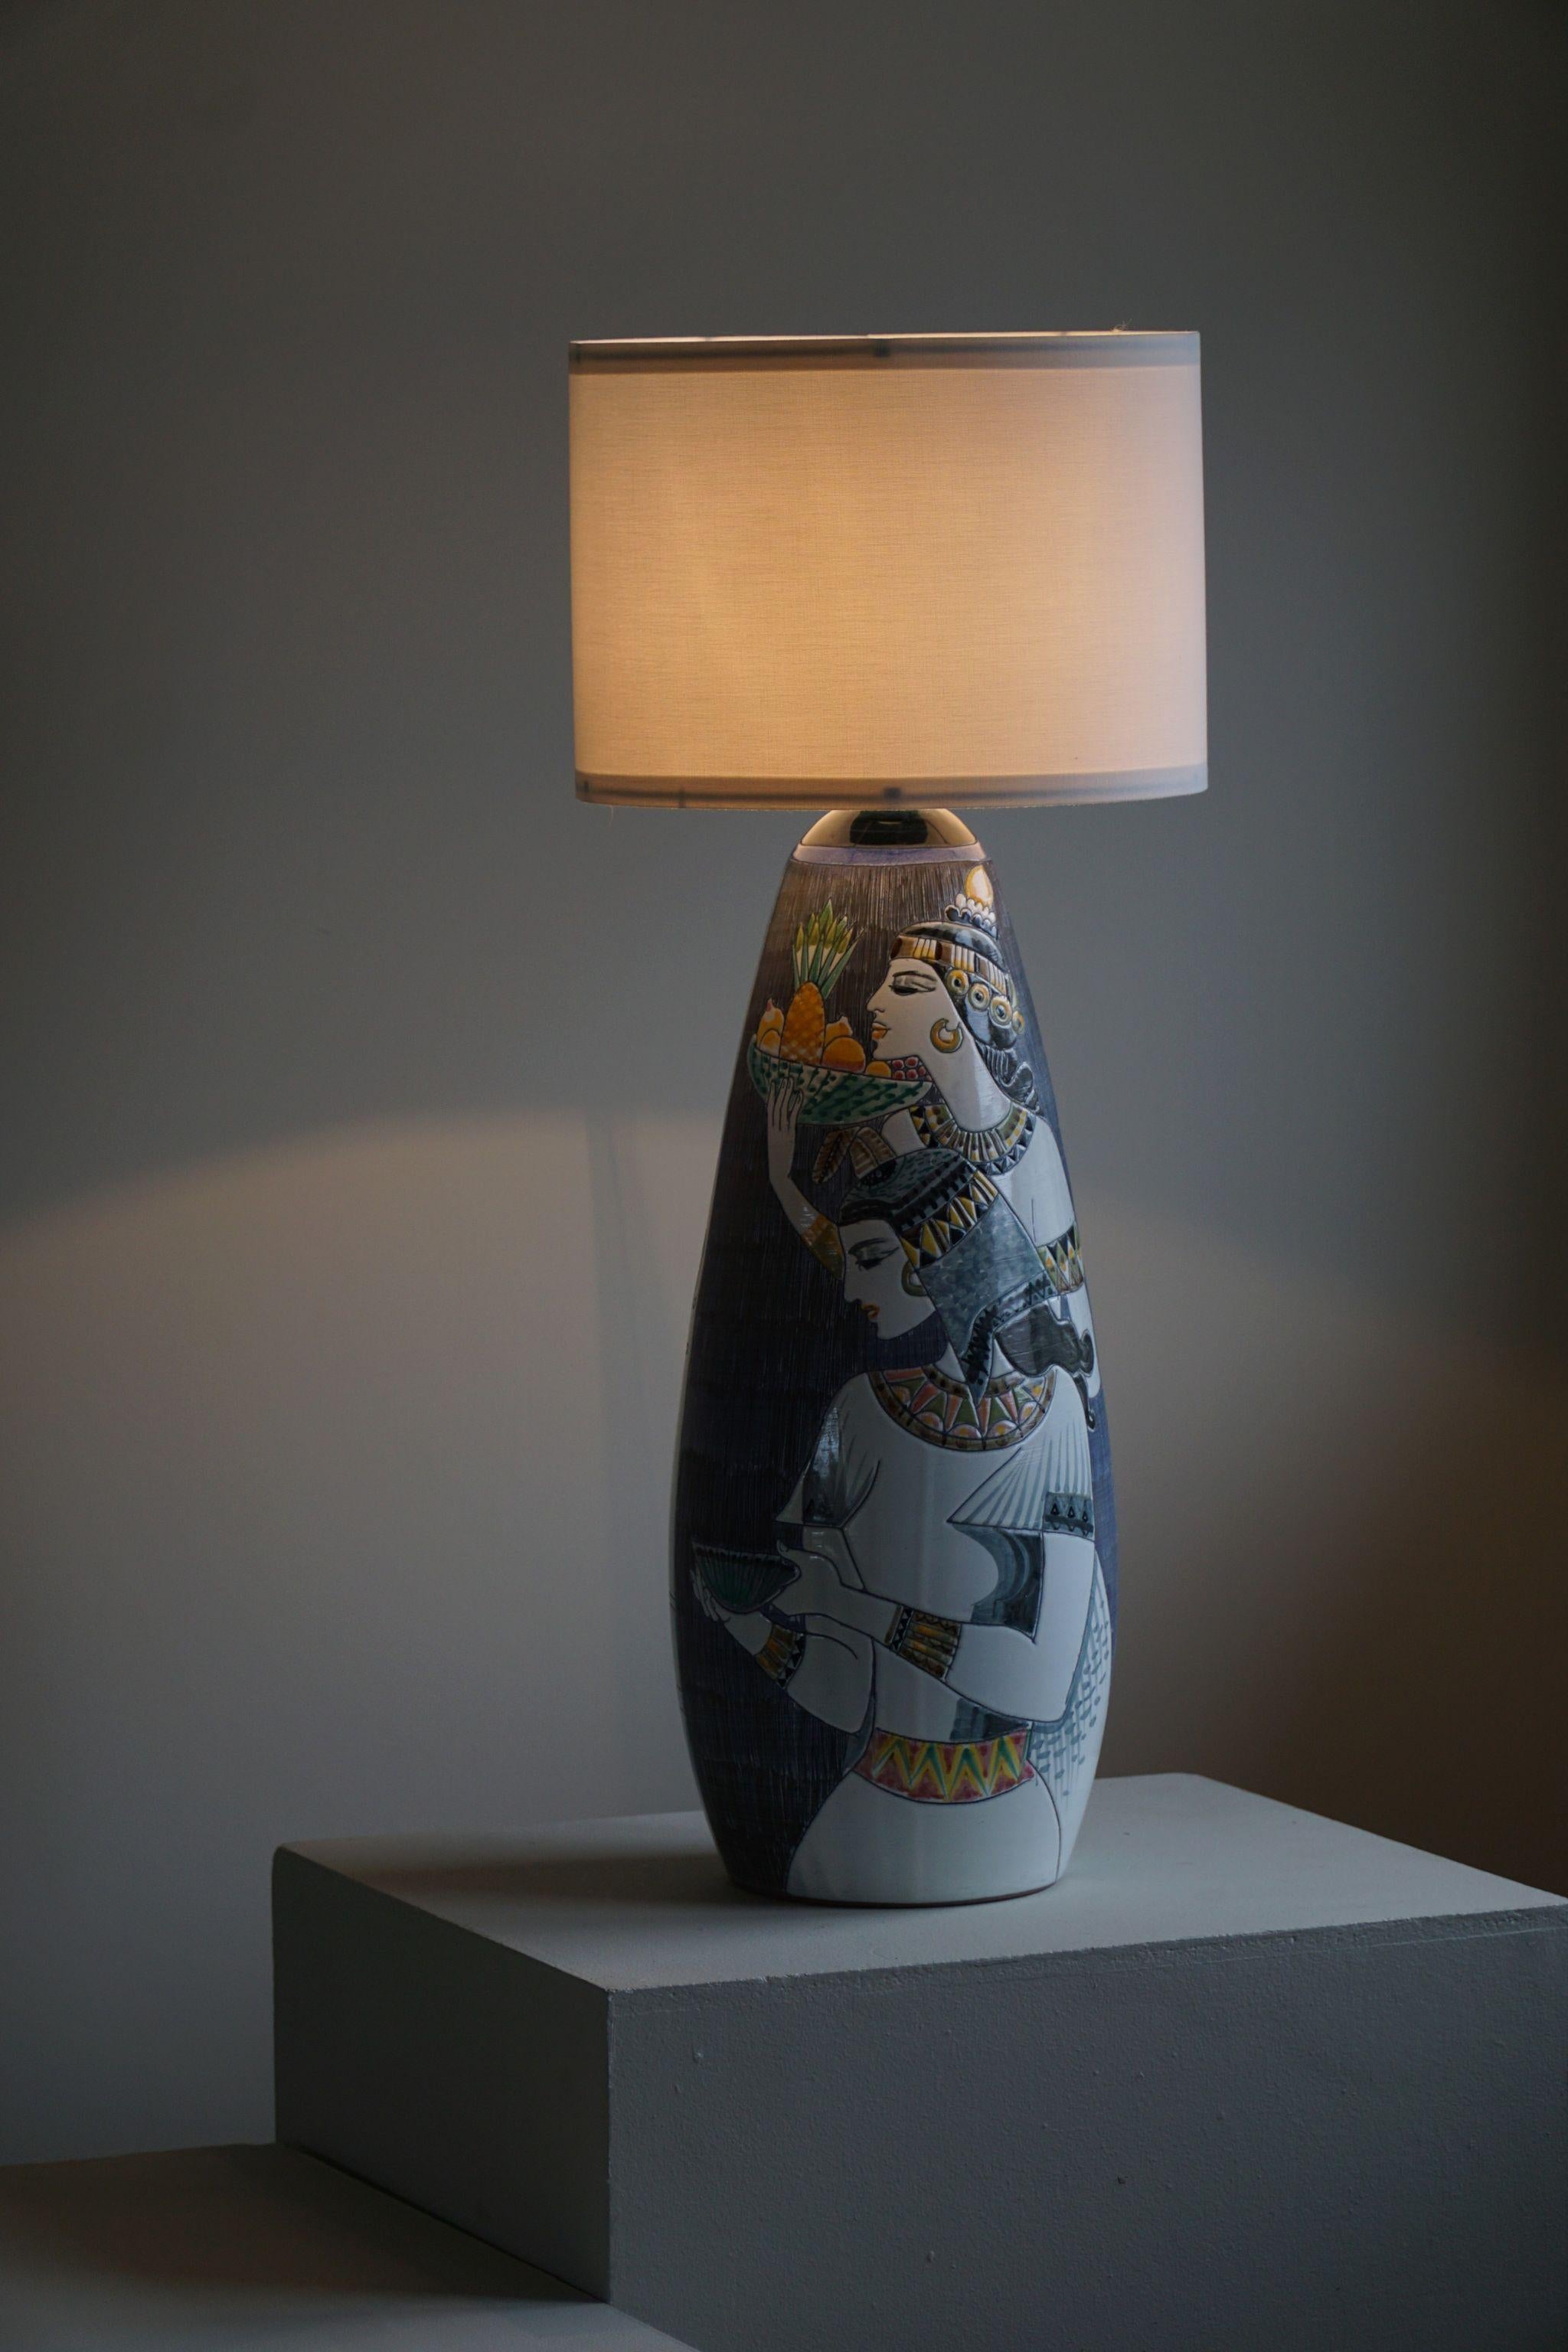 Intrigant grand lampadaire en céramique décoré à la main. Des détails riches tels que les deux humains figuratifs réalisés en technique sgraffito.
Conçu par Marian Zawadzki, modèle 